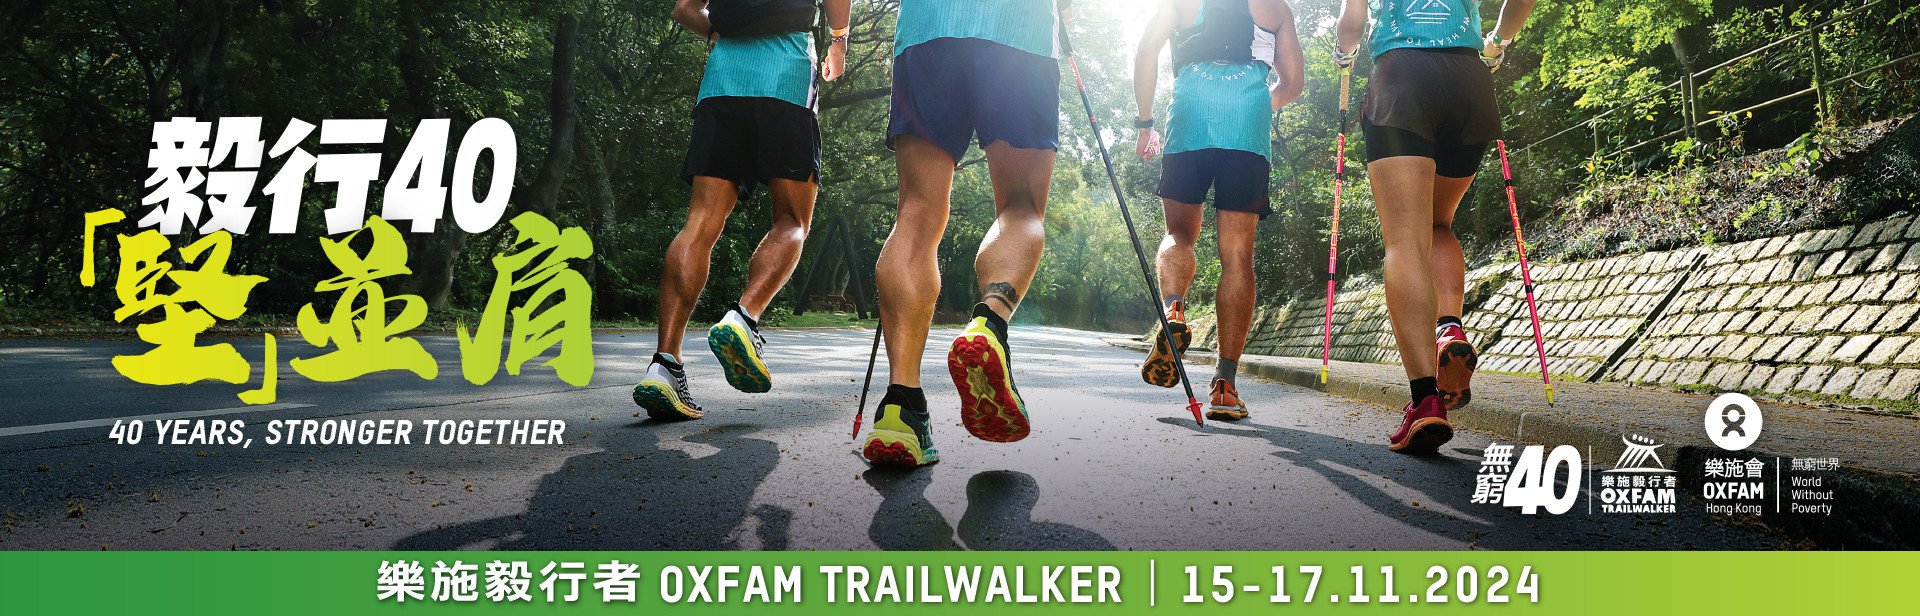 Oxfam Trailwalker 2024